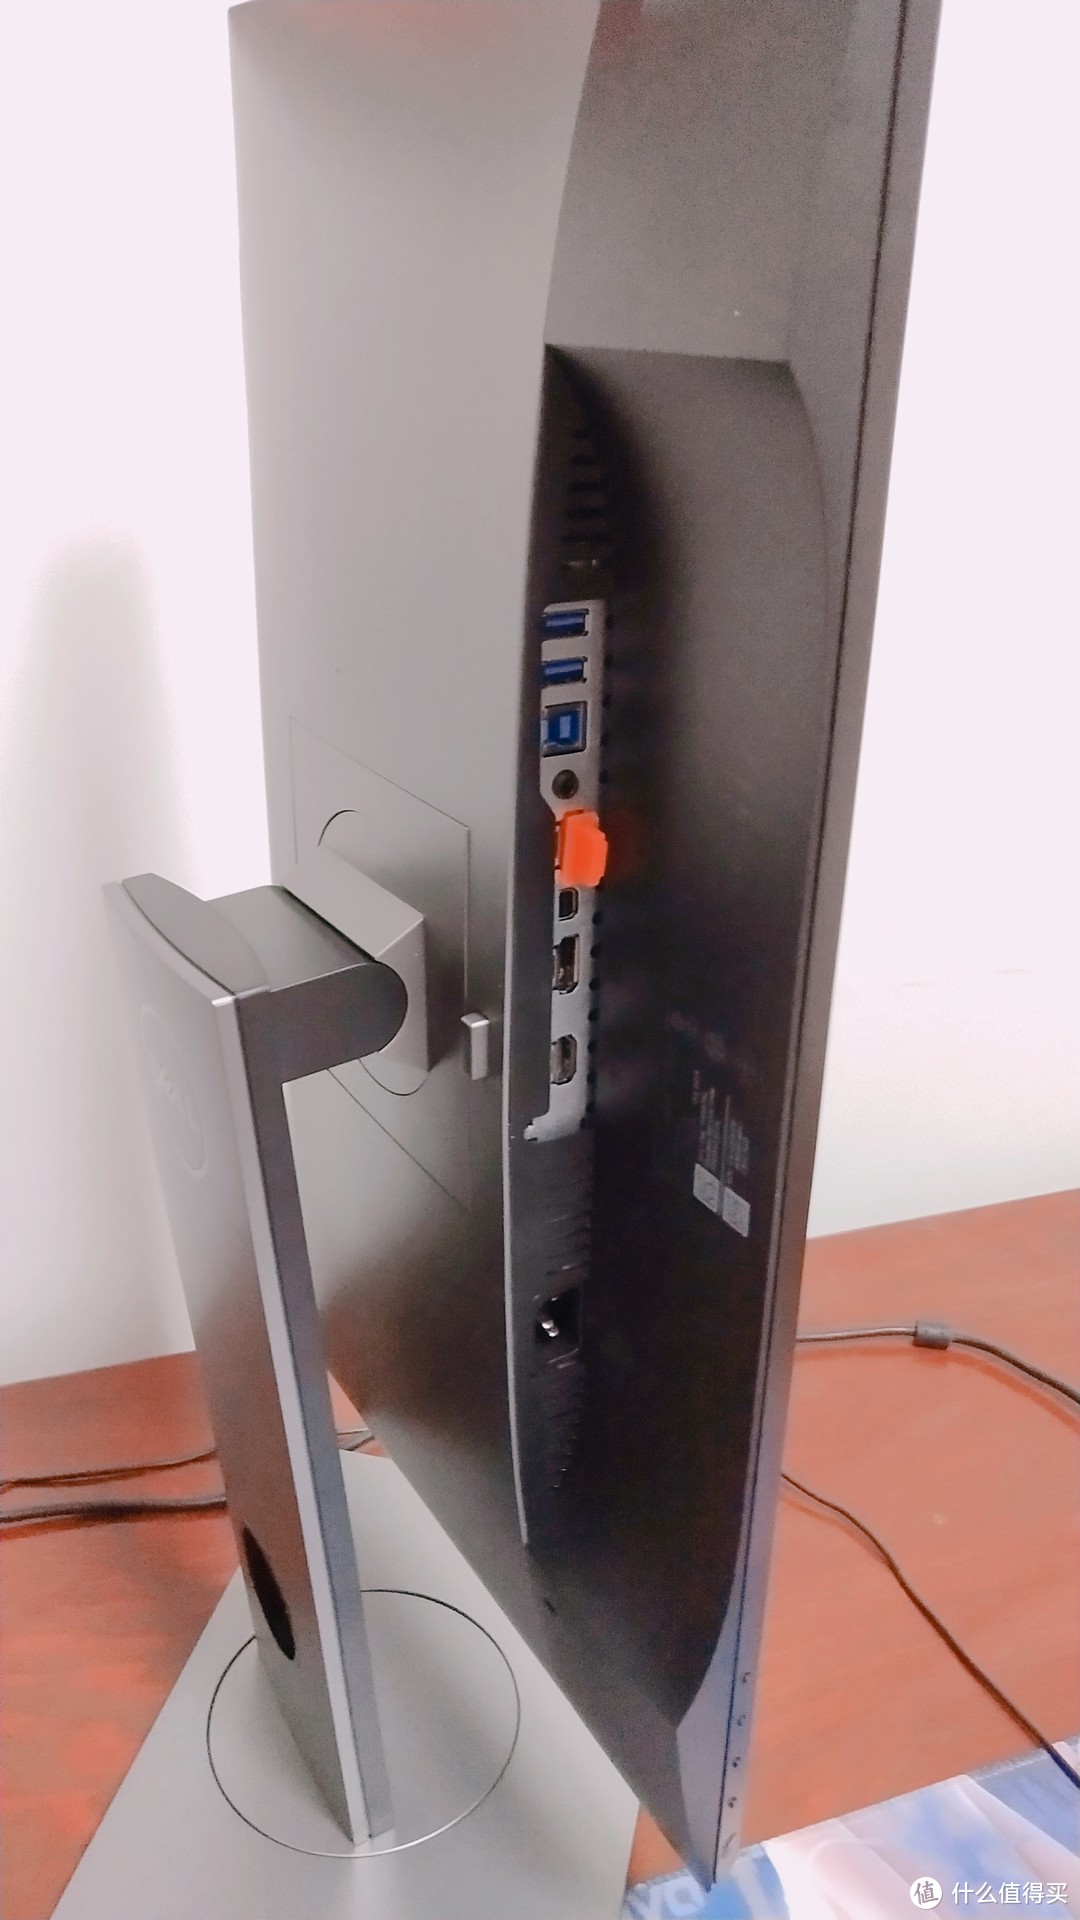 显示器接口，1个HDMI 1.4(MHL 2.0)端口、DP 1.2端口、迷你DP 1.2端口、DP输出端口、4个USB 3.0端口。